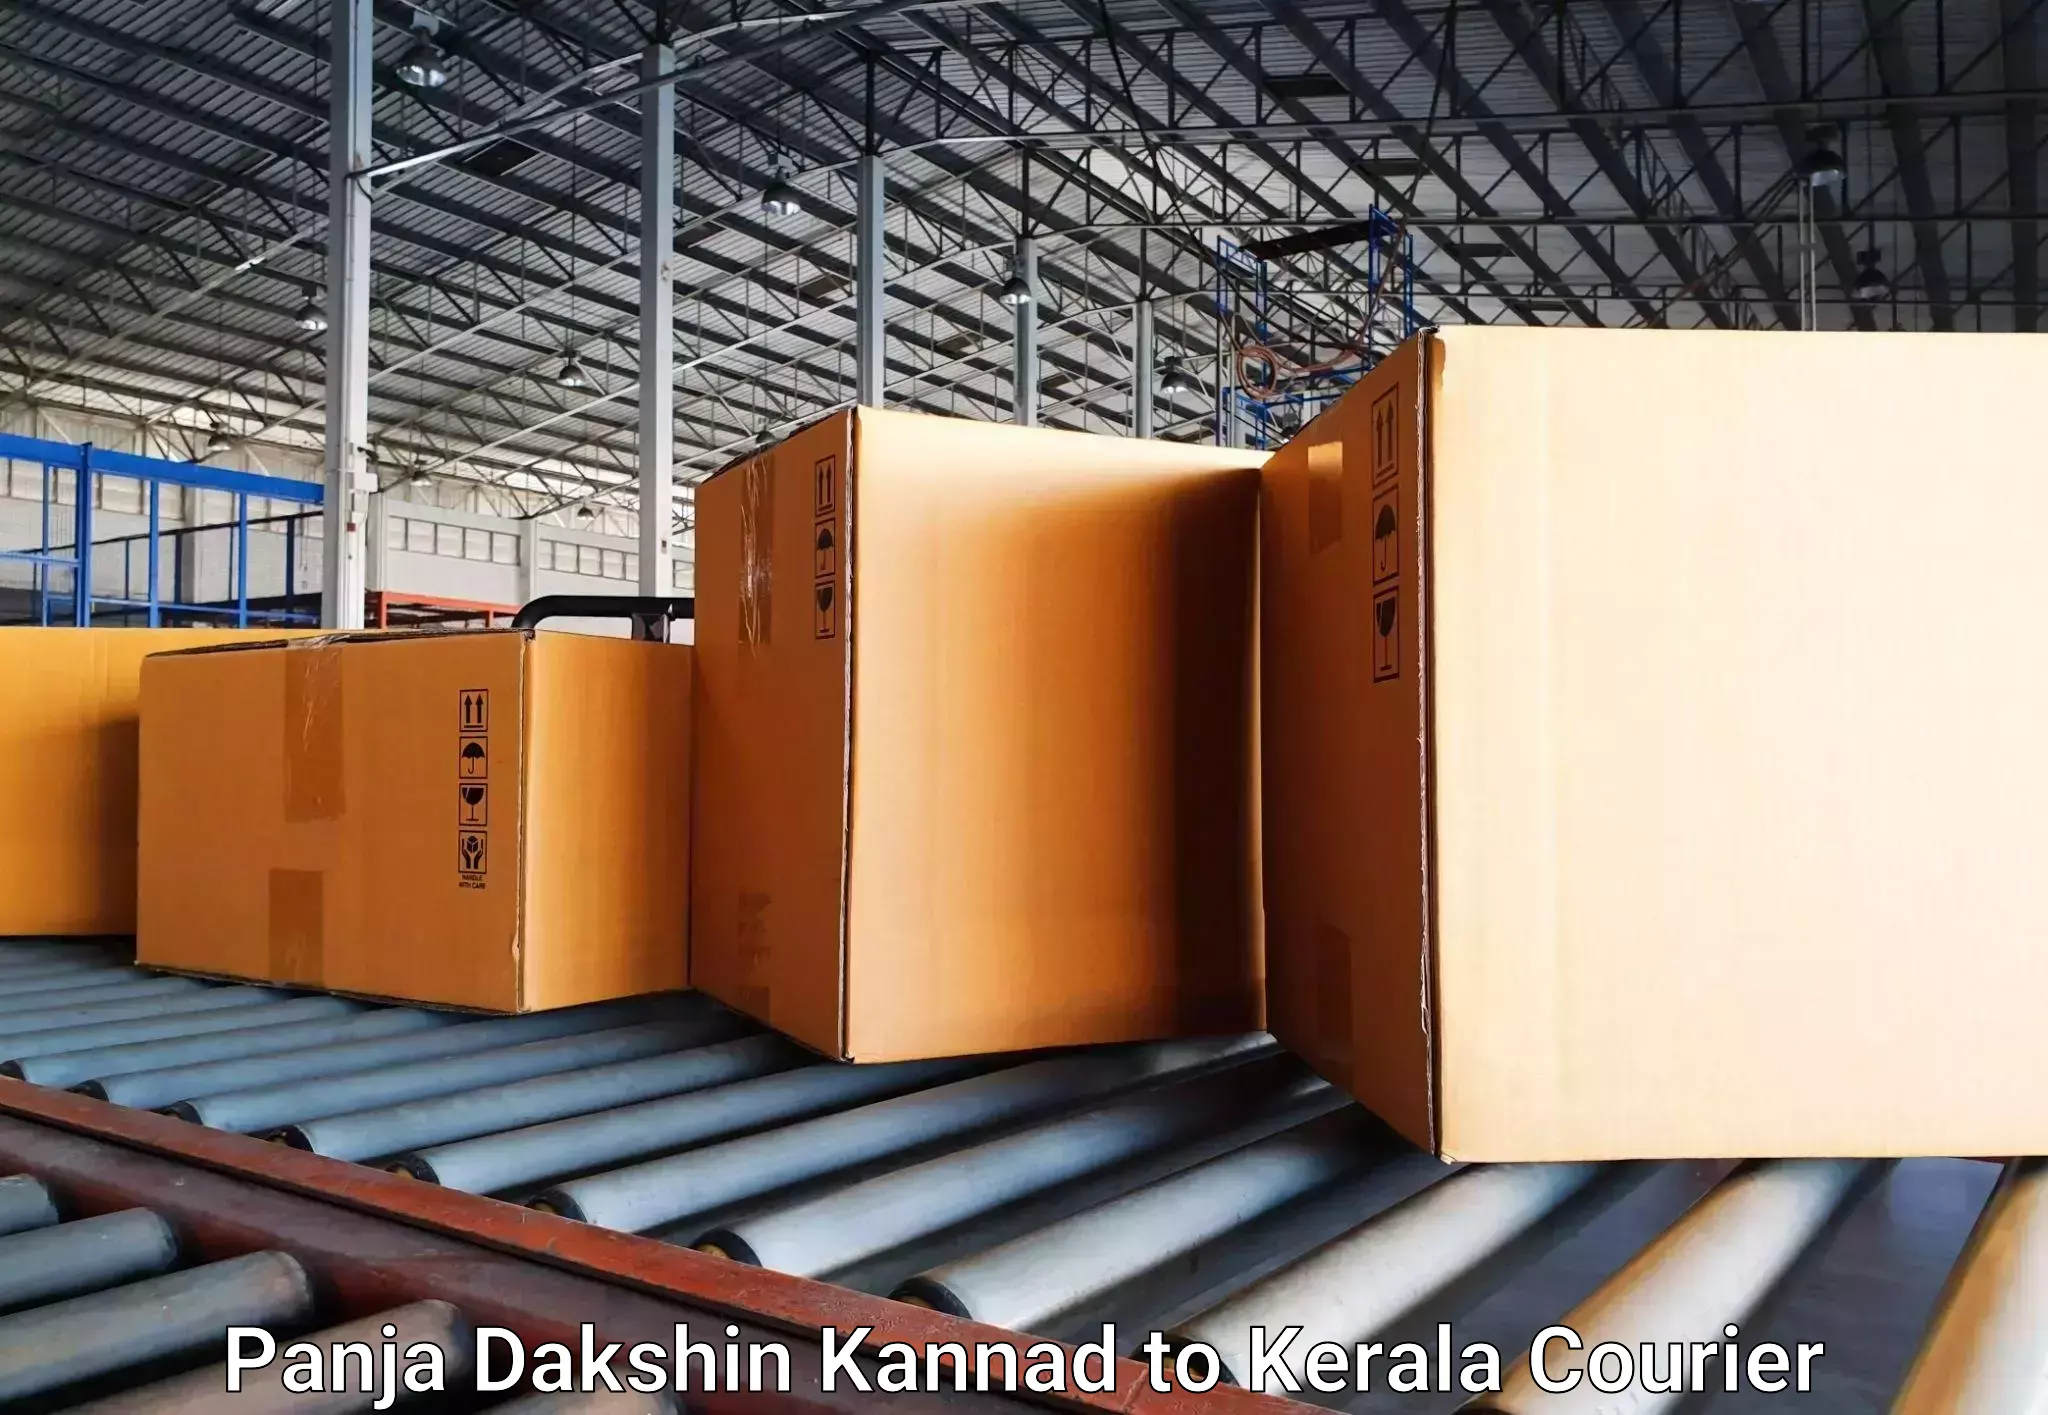 Baggage shipping service Panja Dakshin Kannad to Kerala